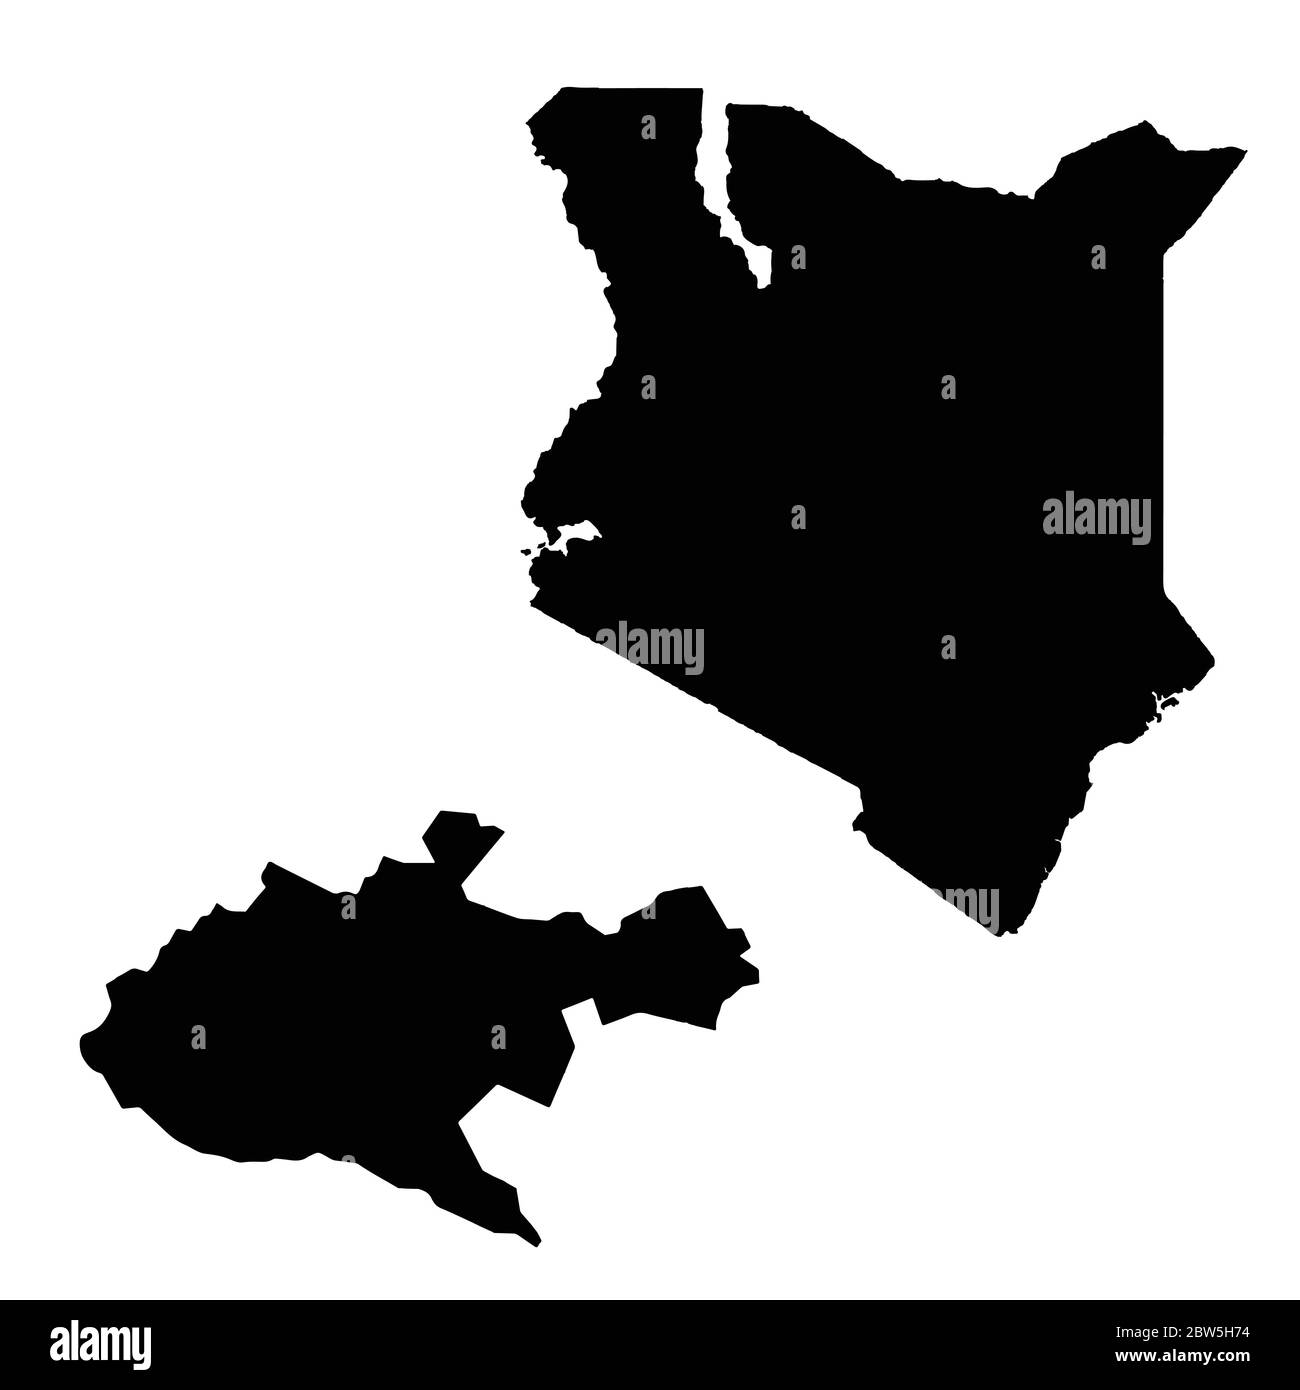 Vektorkarte Kenia und Nairobi. Land und Hauptstadt. Isolierte Vektorgrafik. Schwarz auf weißem Hintergrund. EPS 10-Abbildung. Stock Vektor